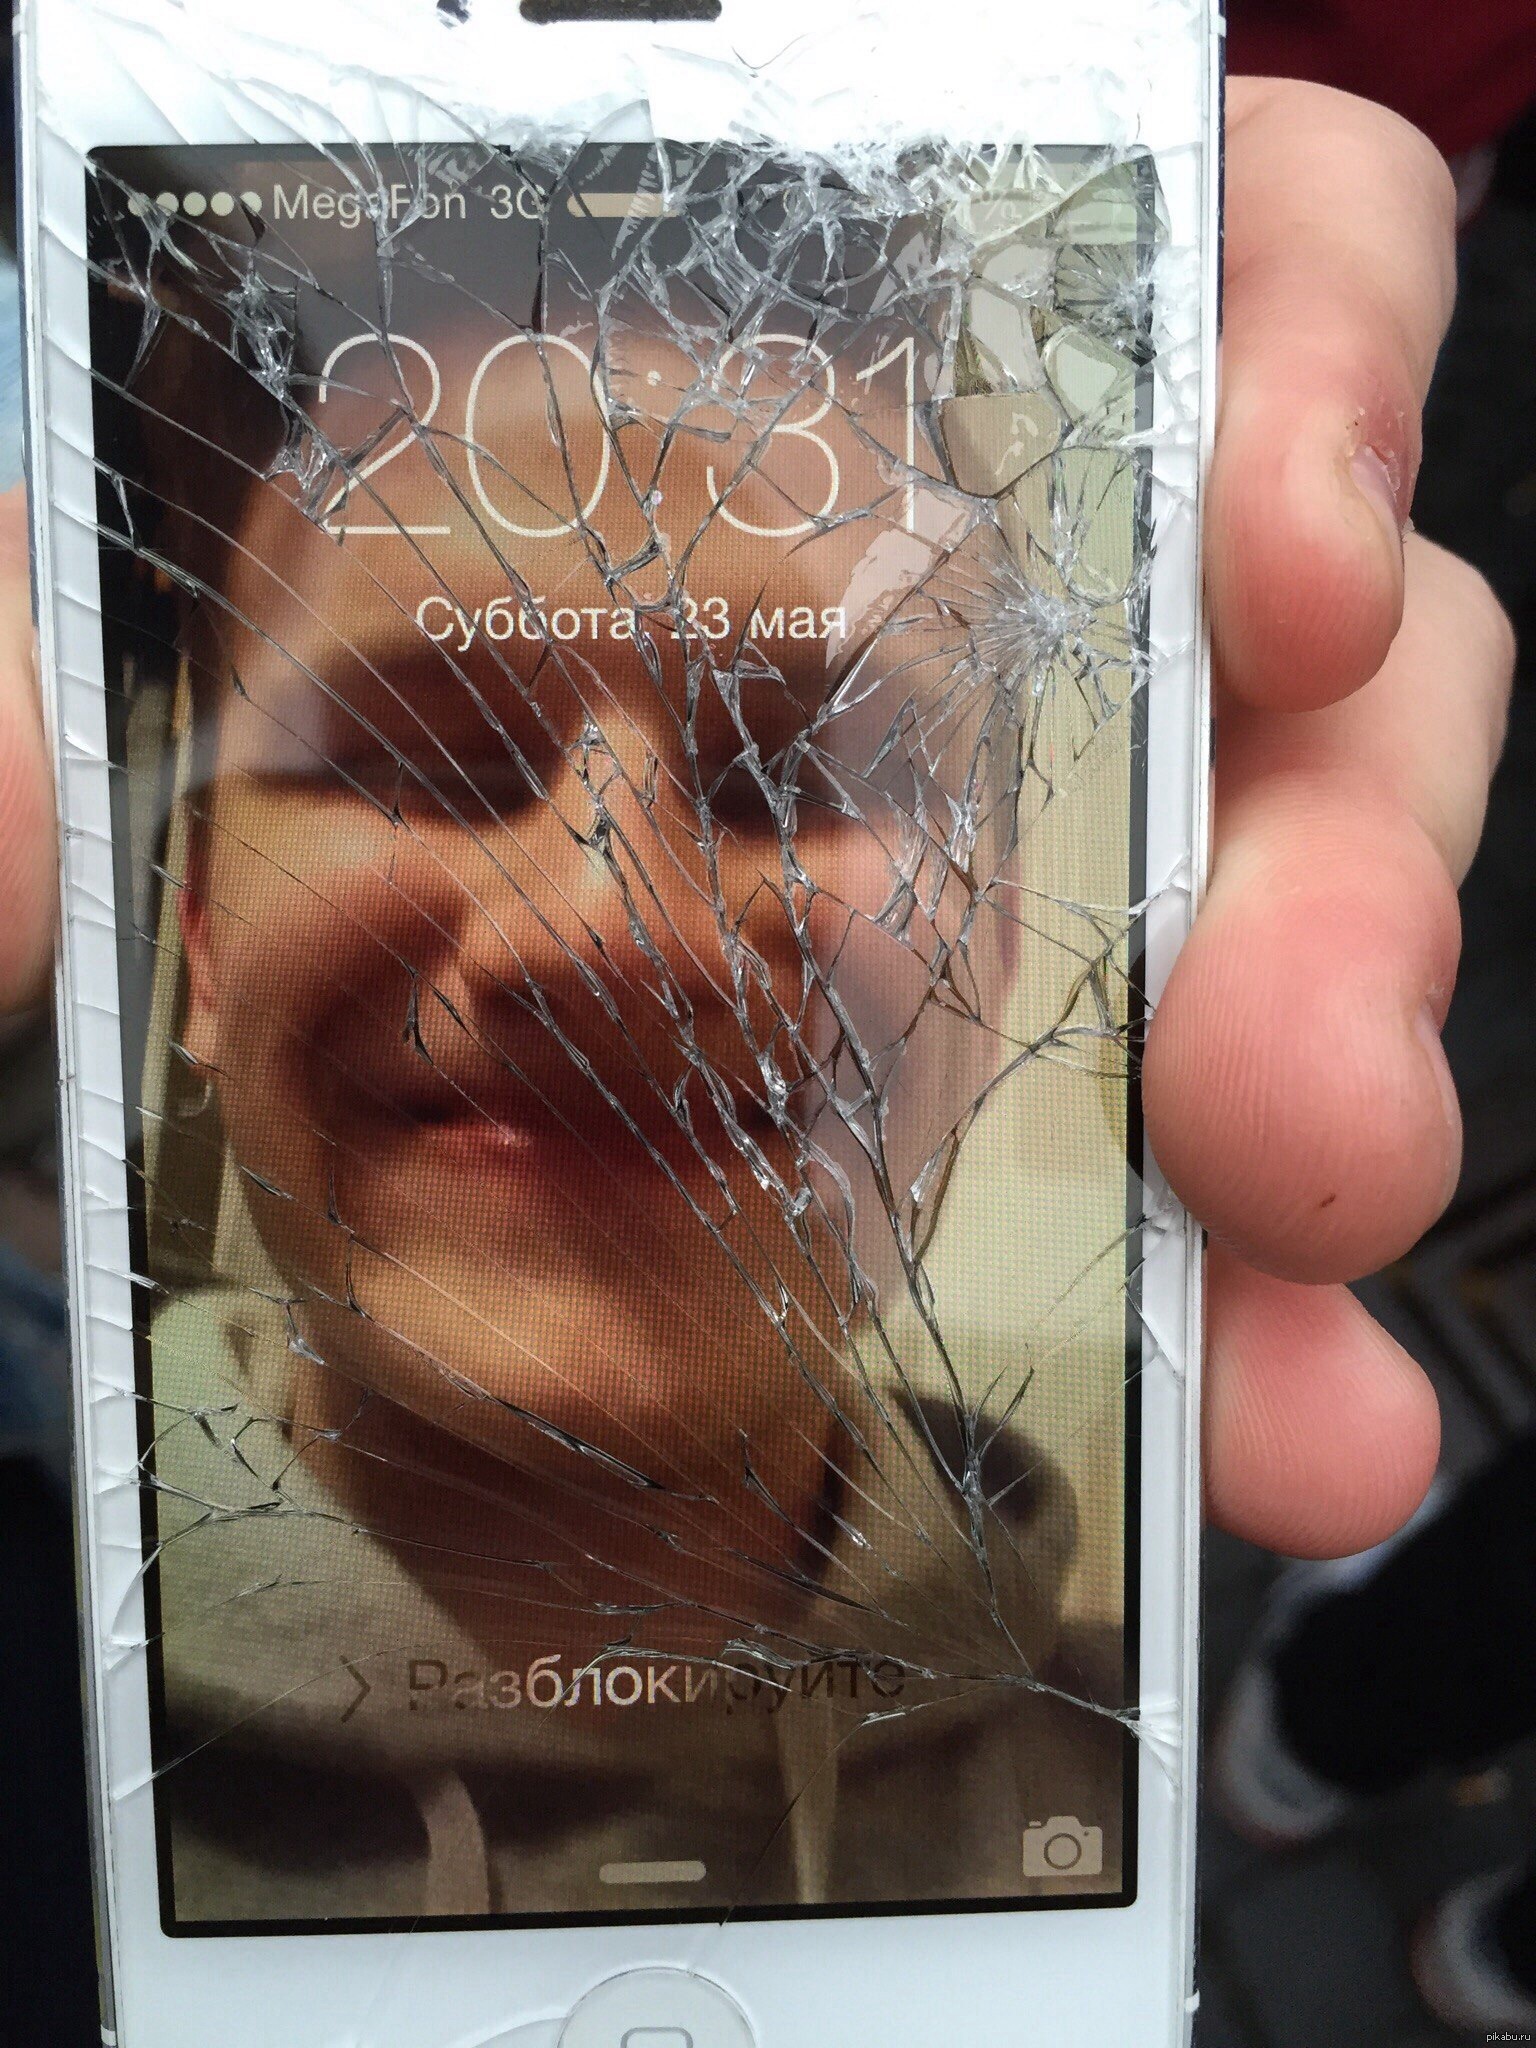 Разбить полностью. Разбит экран телефона. Разбитое стекло смартфона. Разбитый дисплей телефона. Разбитый планшет.